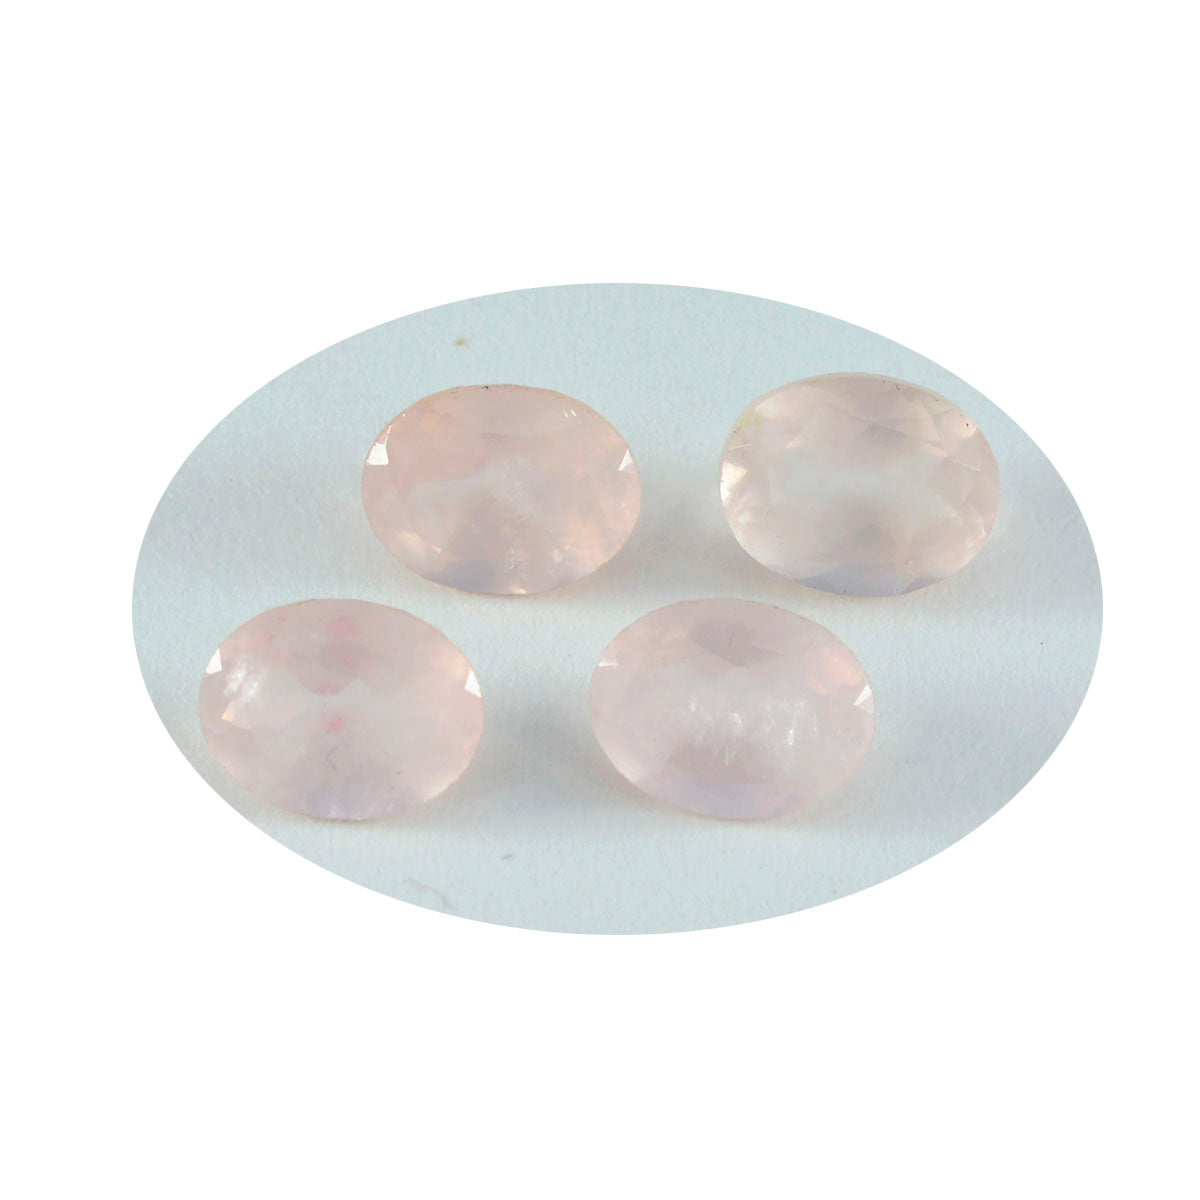 Riyogems 1pc quartz rose à facettes 10x14mm forme ovale qualité fantastique pierre en vrac